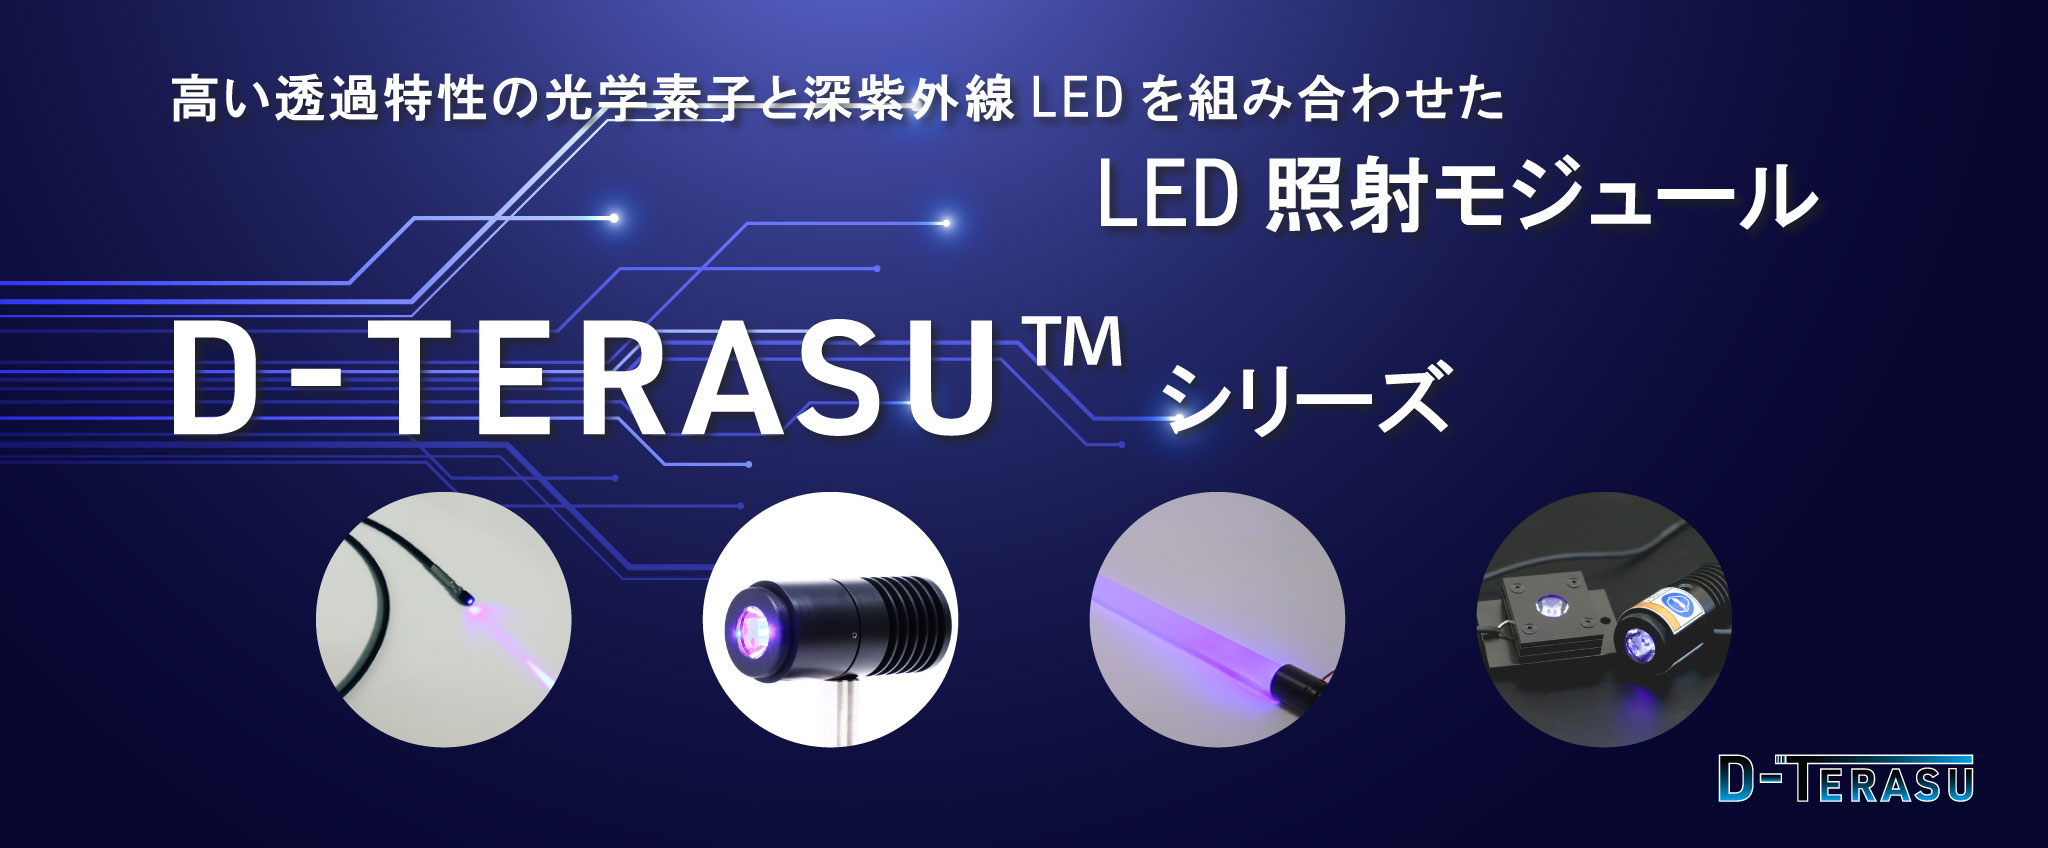 紫外線照射ユニットシリーズの紹介